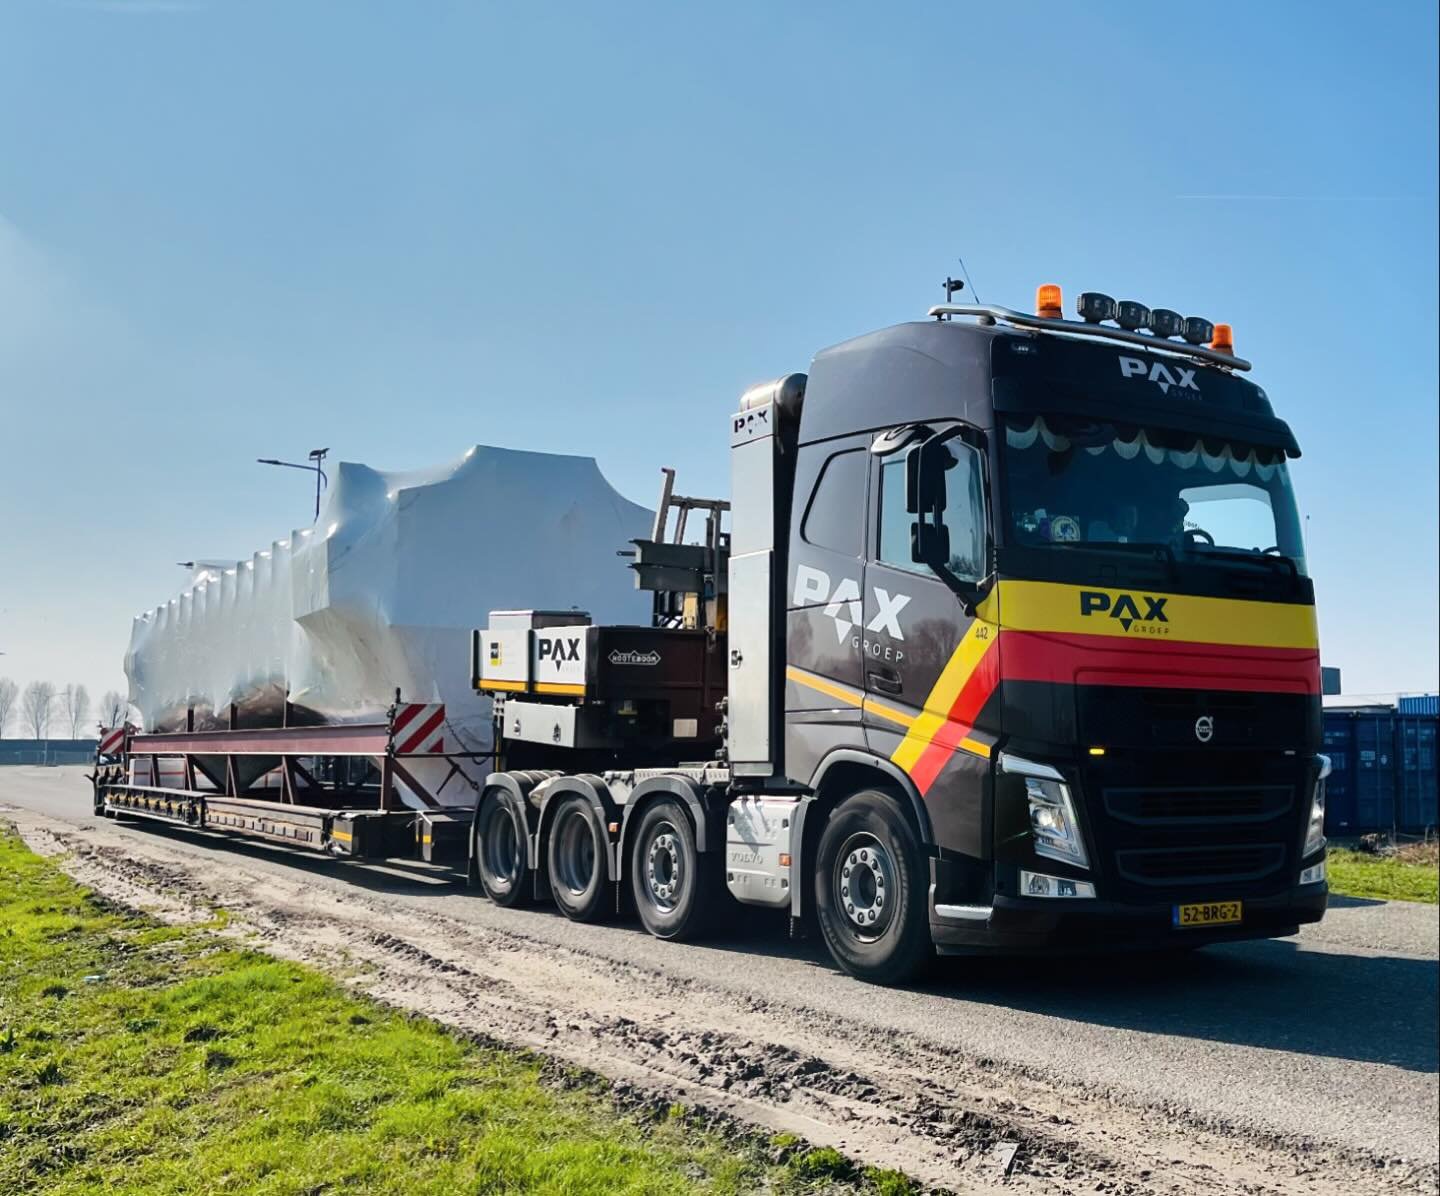 Pax groep transport vrachtwagen zwart geel rood